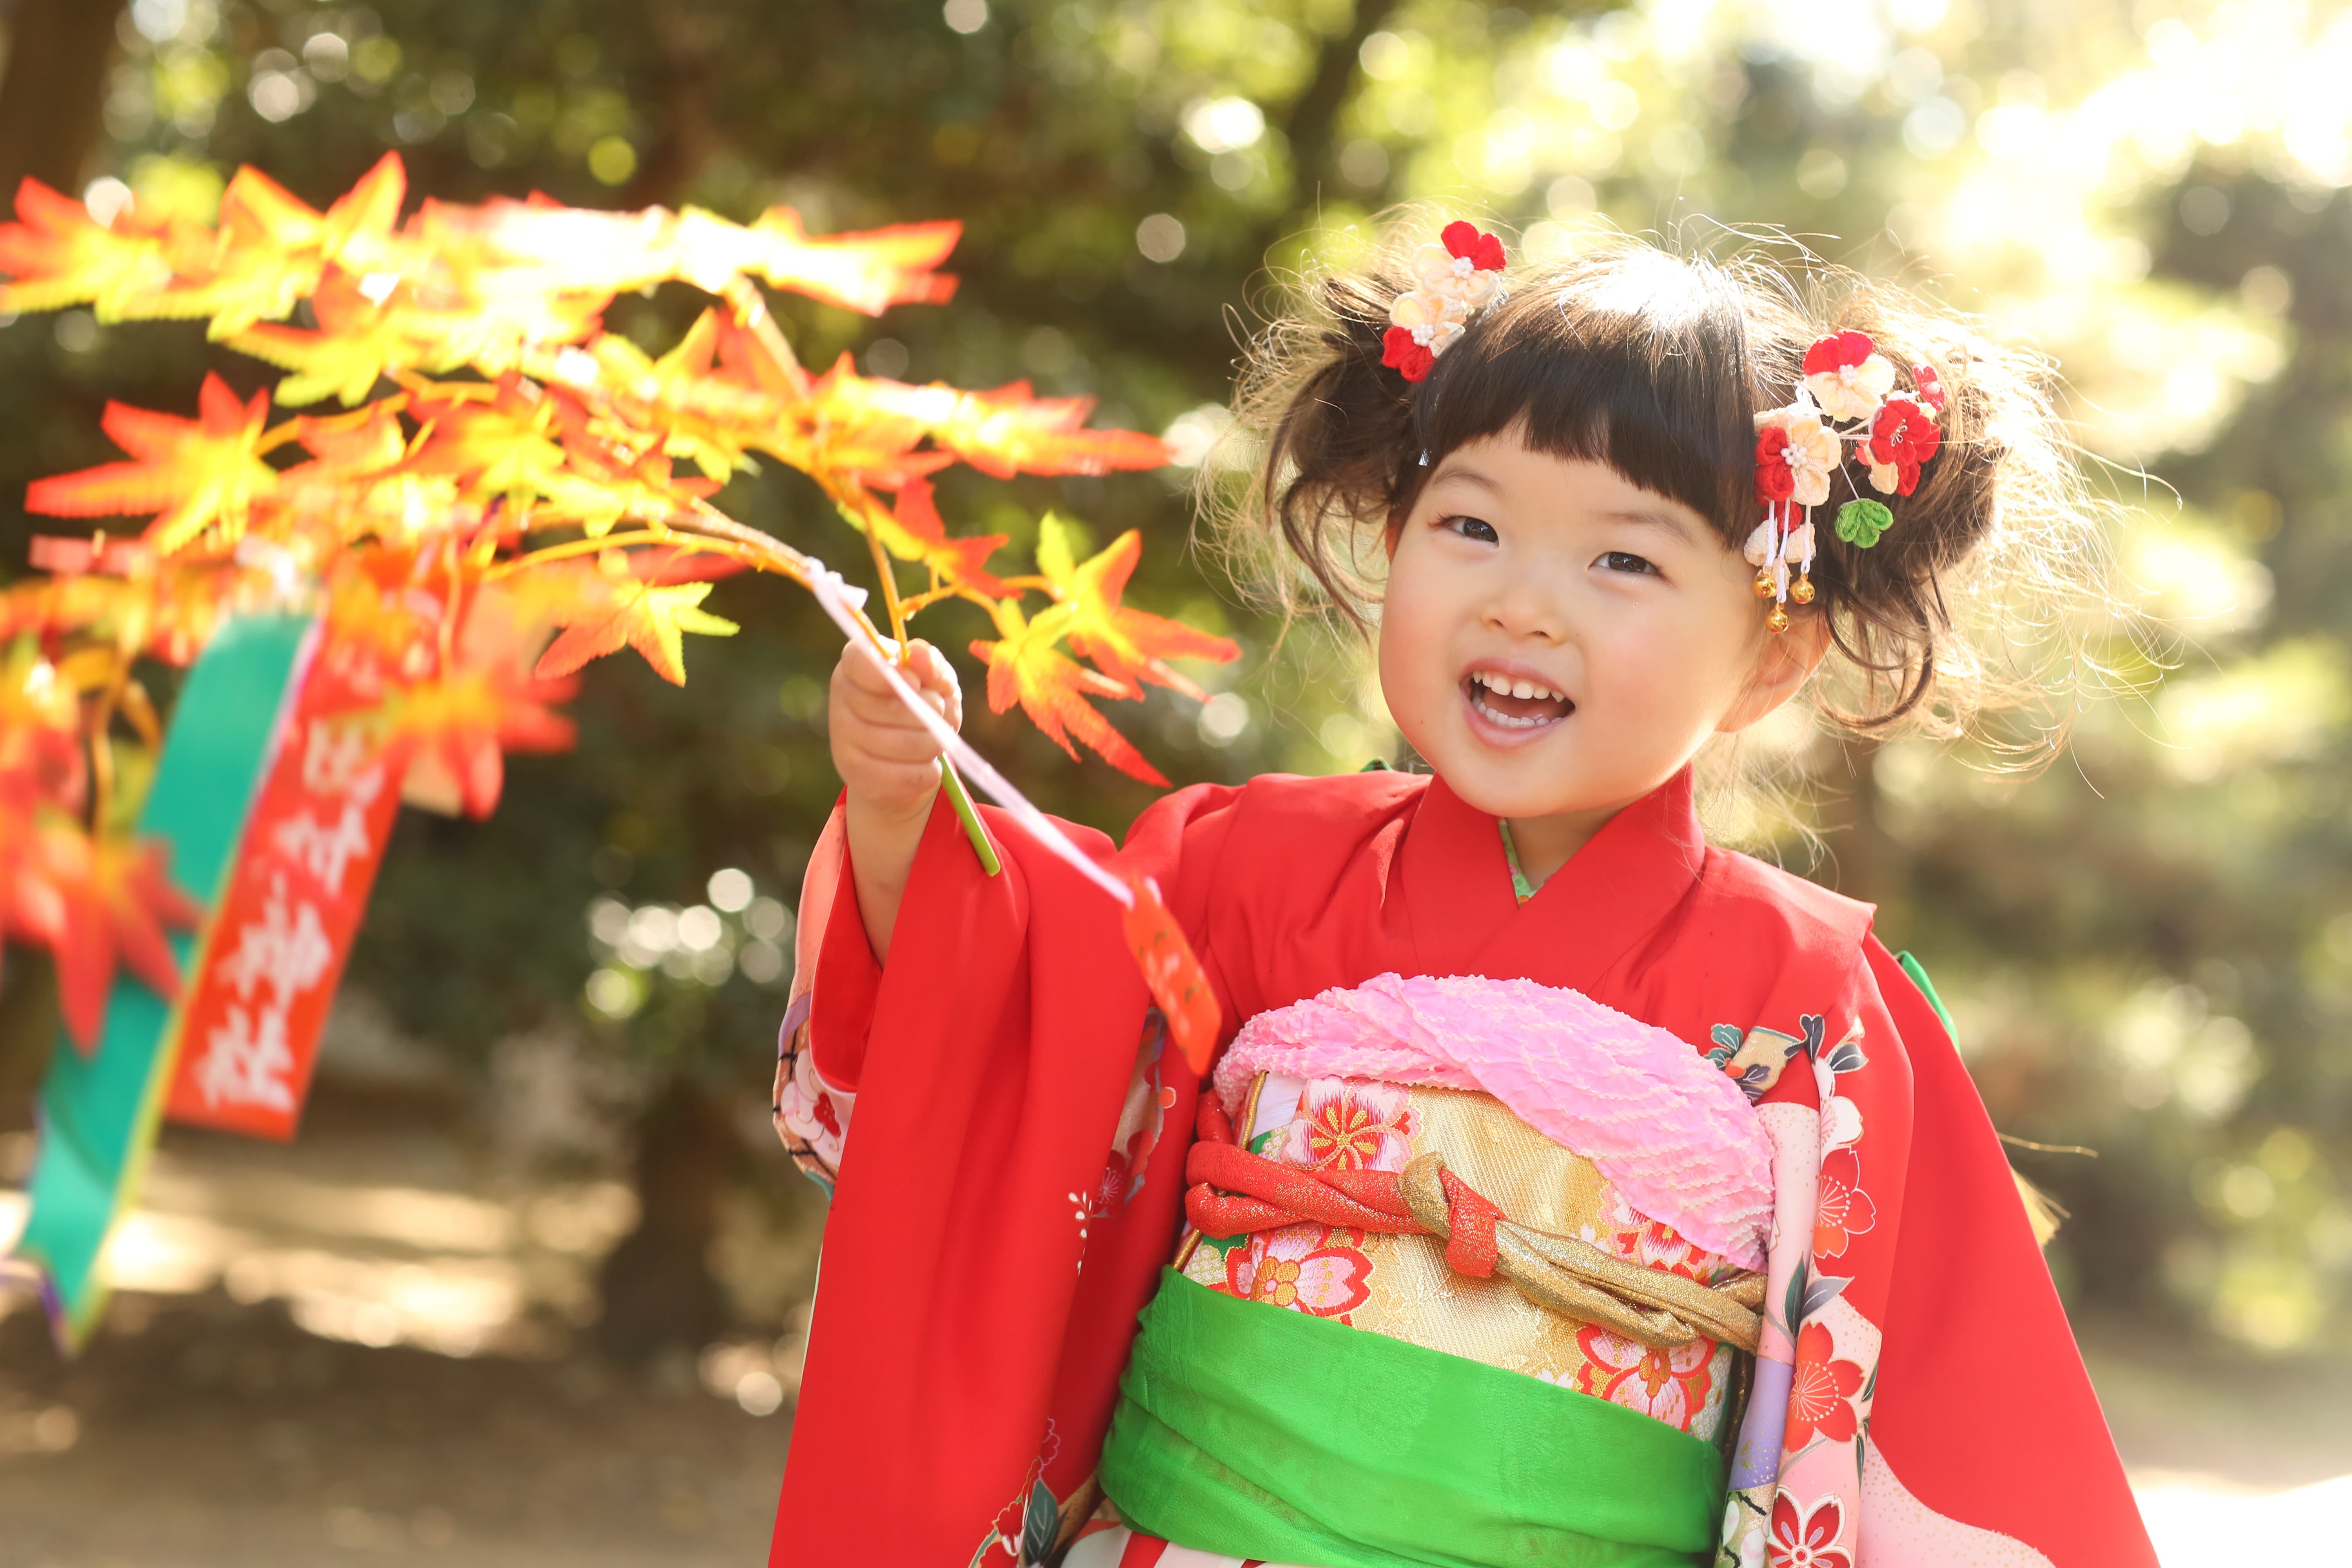 田村神社で七五三撮影した3歳の女の子